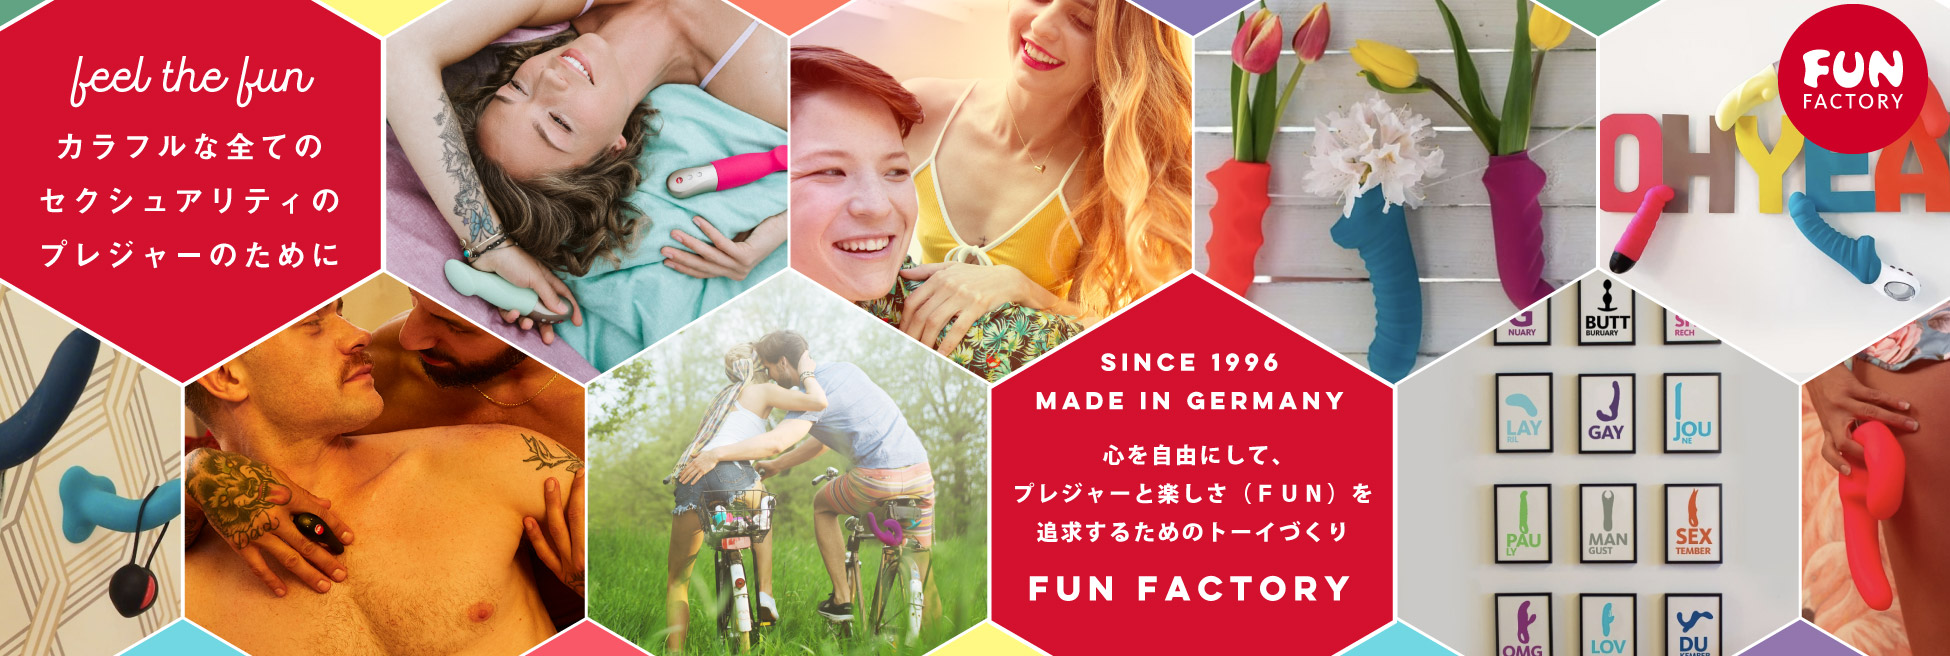 ドイツのプレジャーブランド「FUN FACTORY」が女性のプレジャーに寄り添う理由